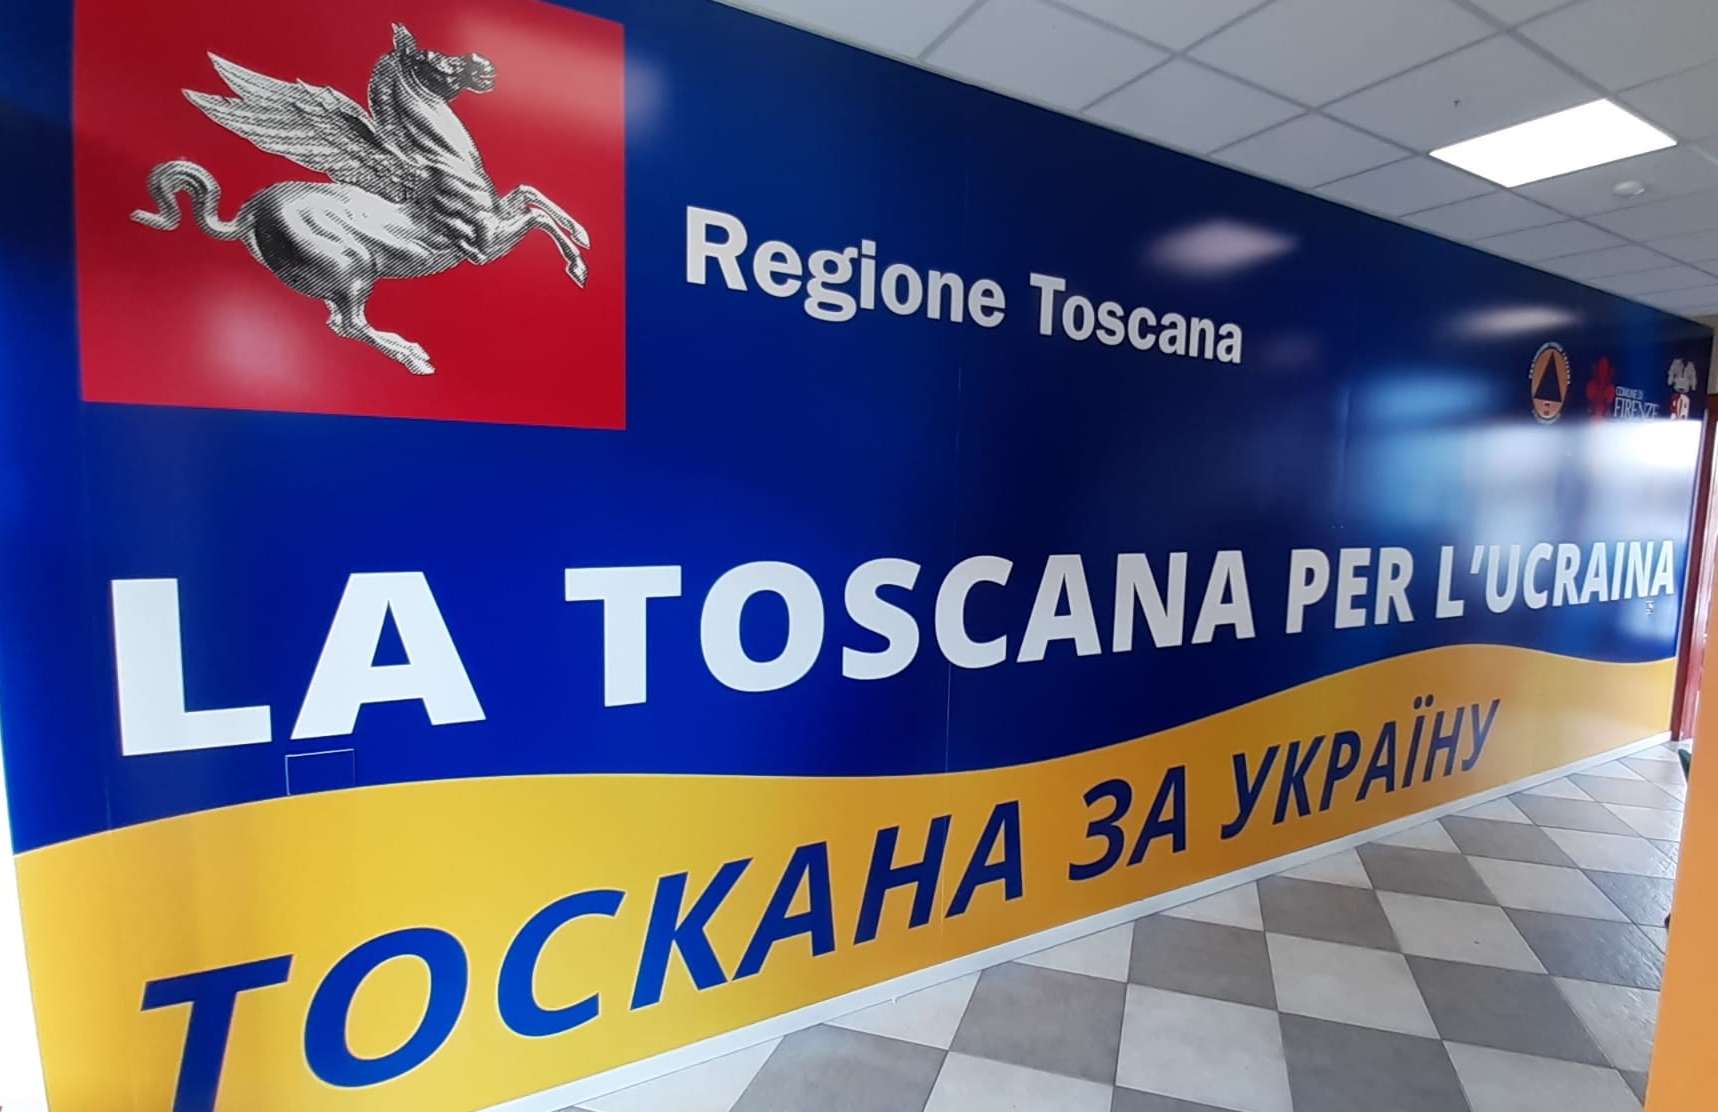 Immagine Ucraina, accoglienza profughi: le disposizioni operative della Toscana